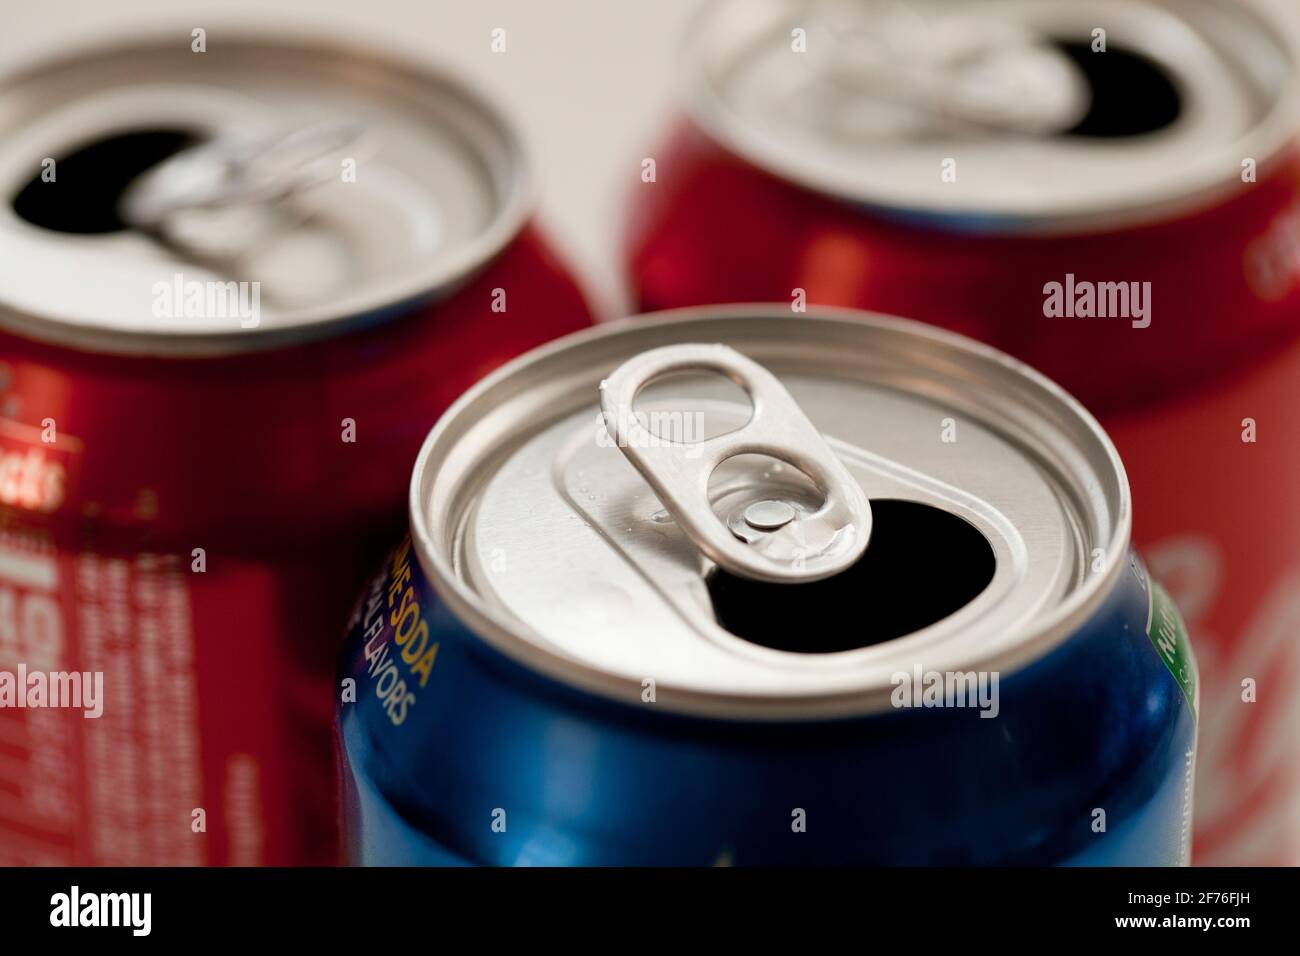 Latas abiertas de soda (latas de pop, latas de aluminio, latas de aluminio) - EE.UU Foto de stock